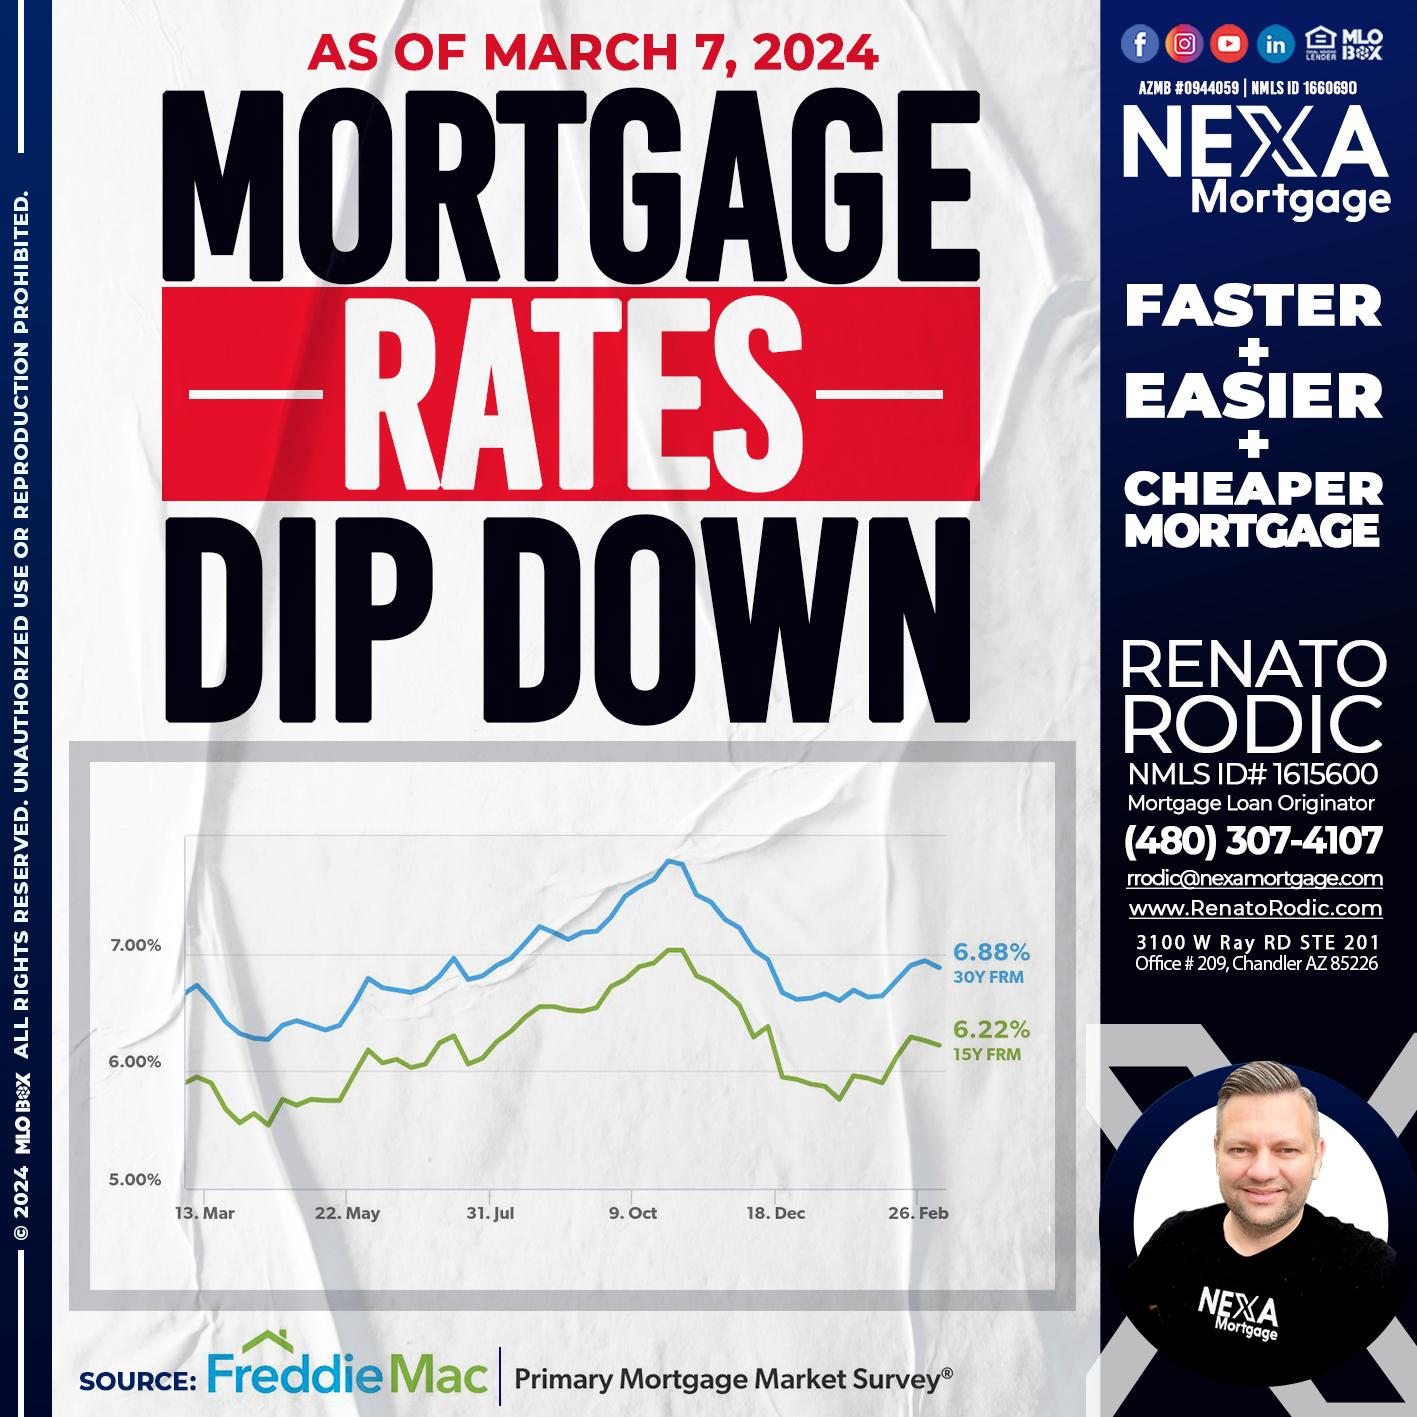 MORTGAGE RATES - Renato Rodic -Mortgage Loan Originator